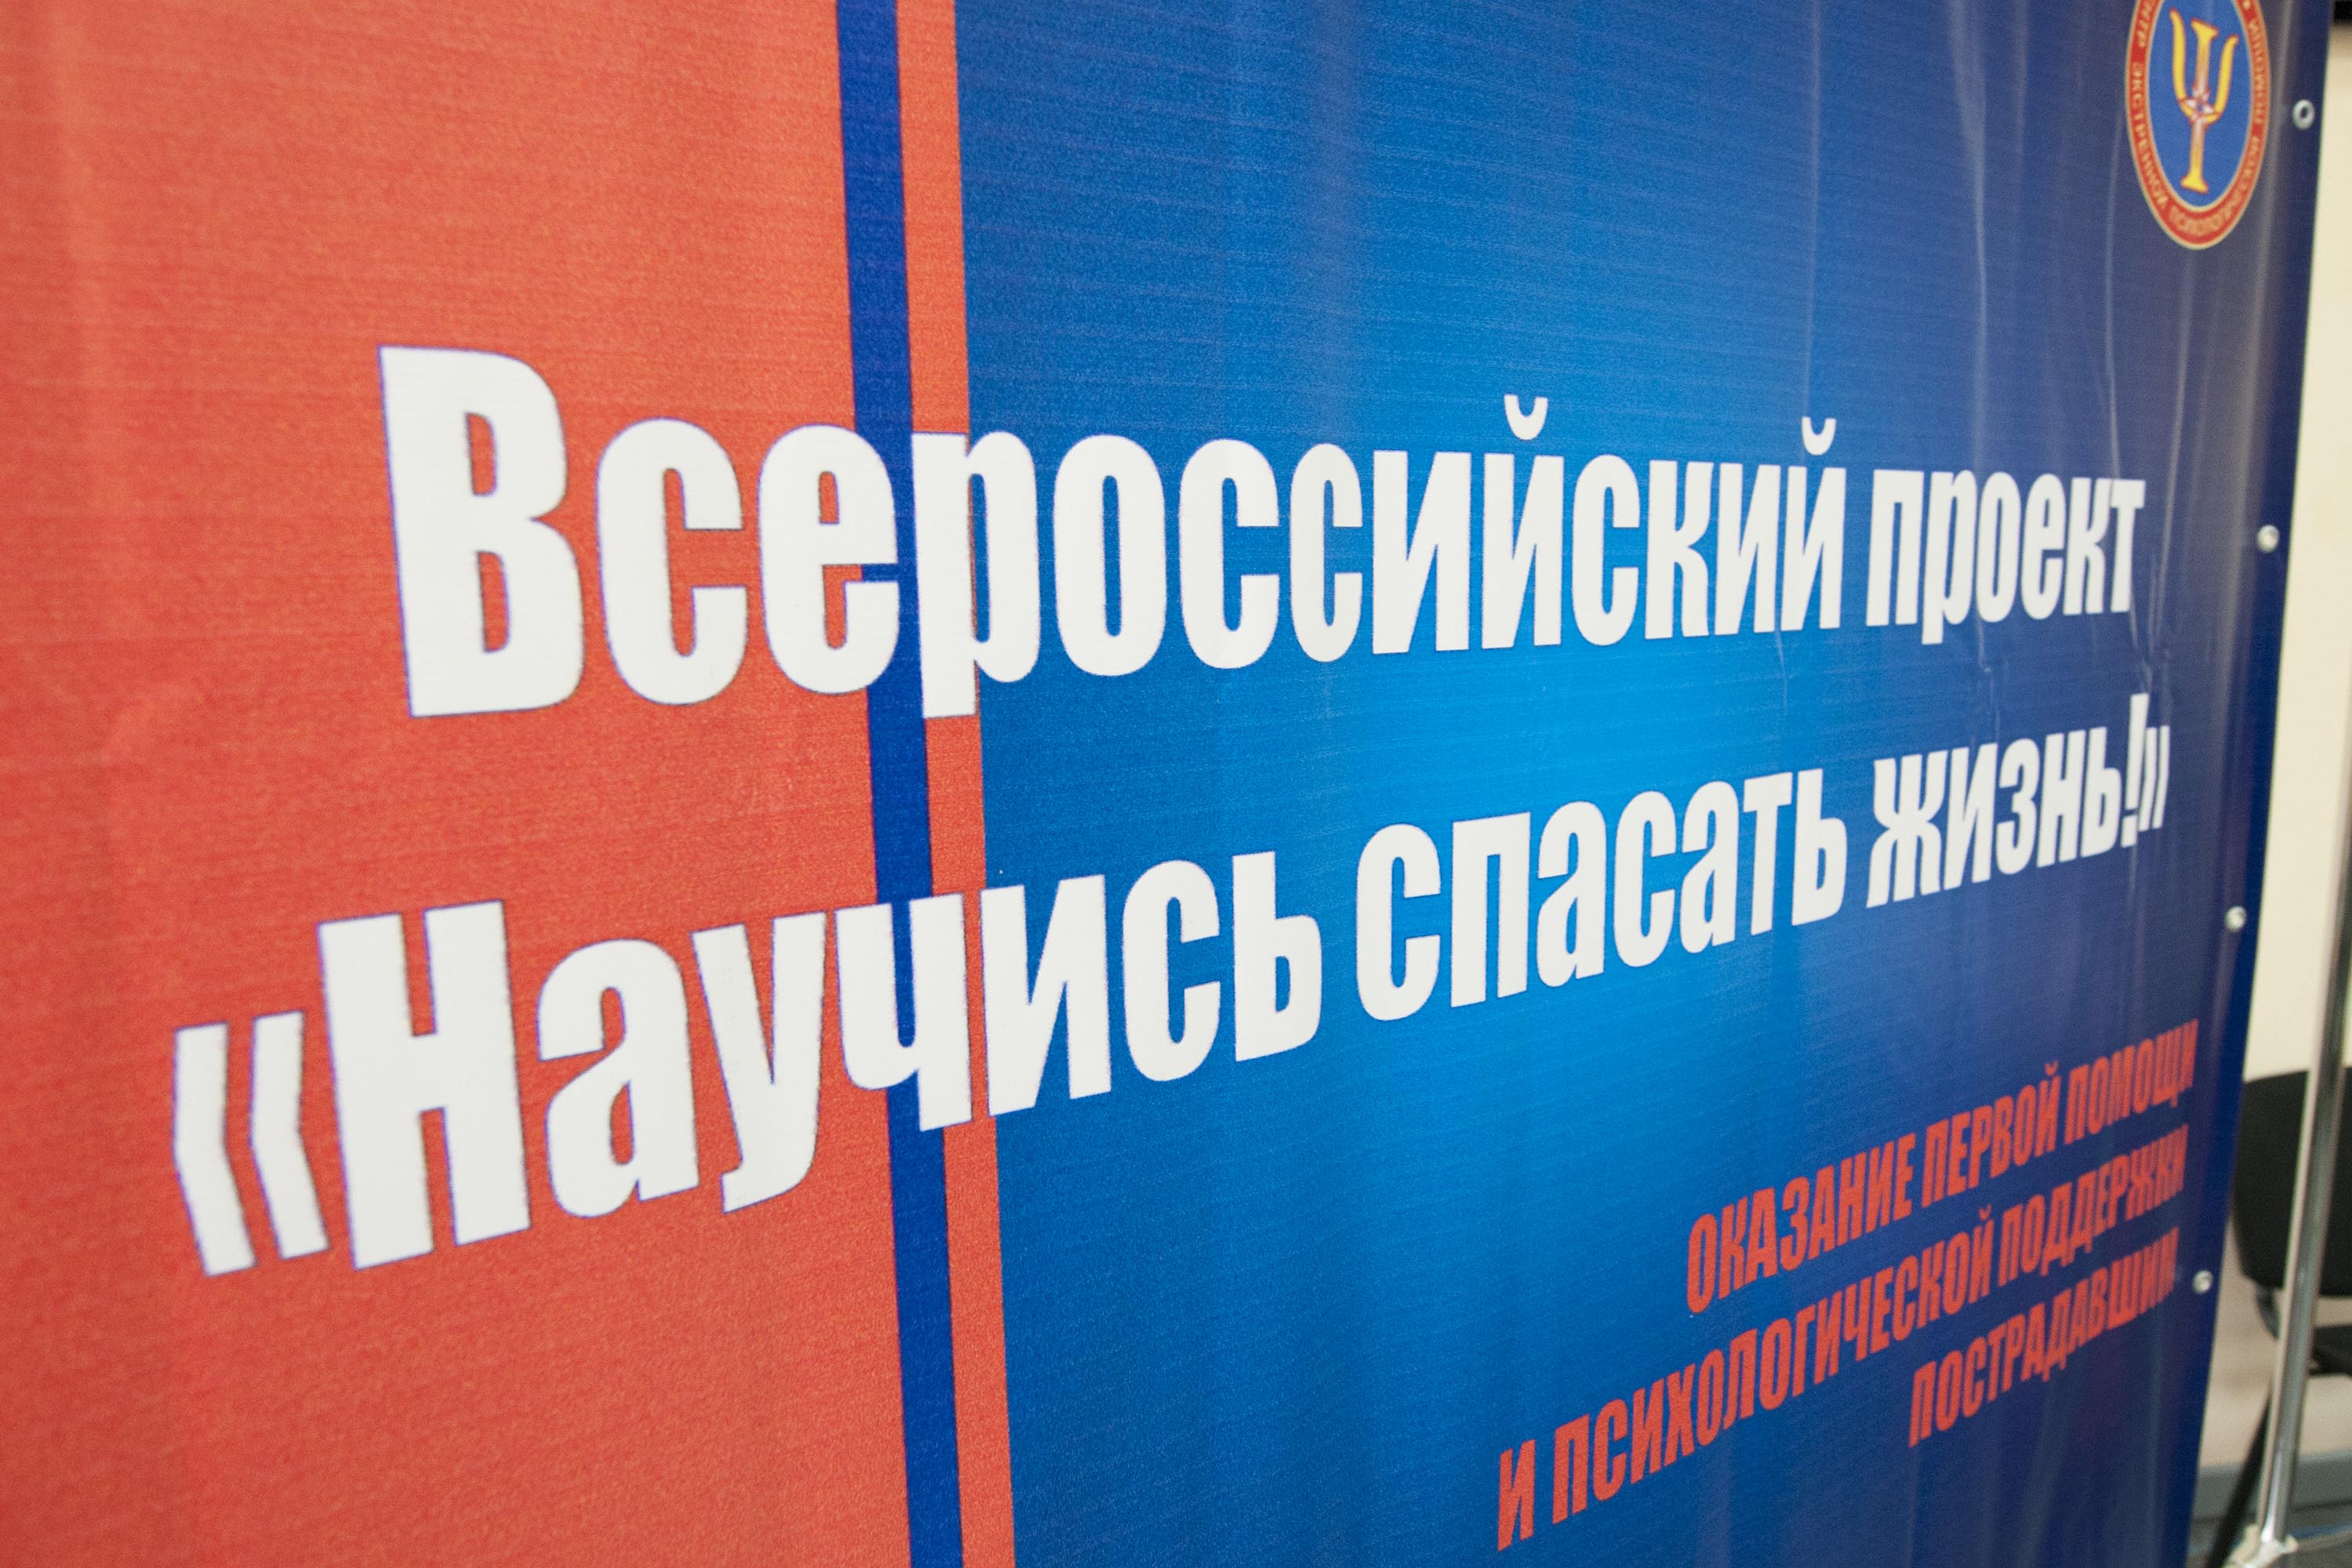 В Кемеровской области стартовал всероссийский проект по обучению населения первой помощи «Научись спасать жизнь!»